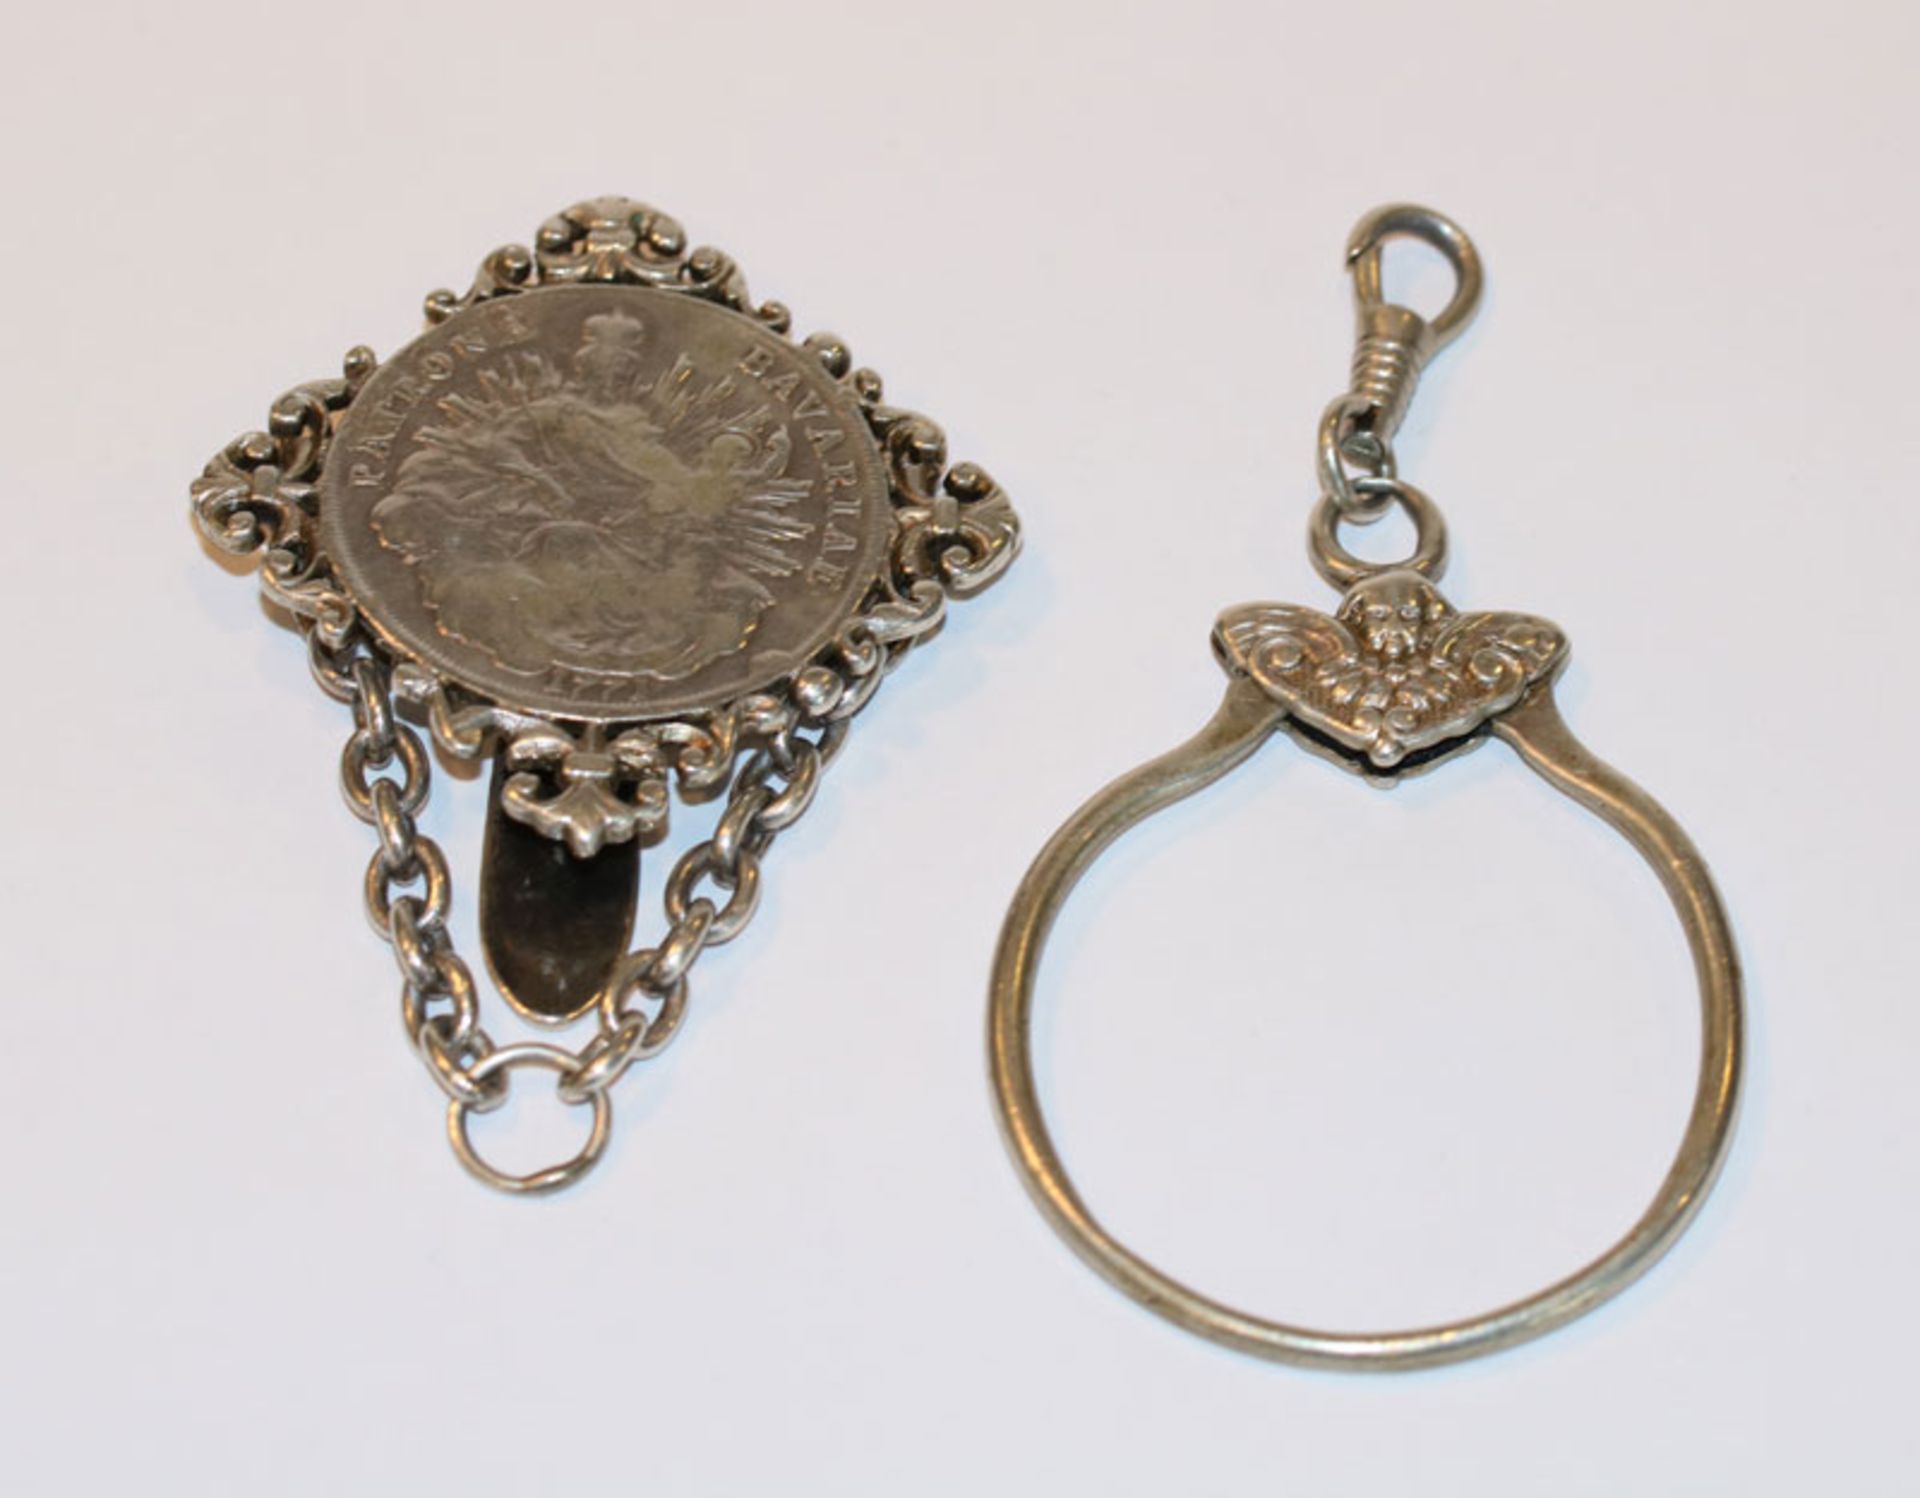 Silber Rockstecker mit Silbertaler 'Patrona Bavaria', L 6 cm, und Silber Schlüsselring, D 5 cm, zus.